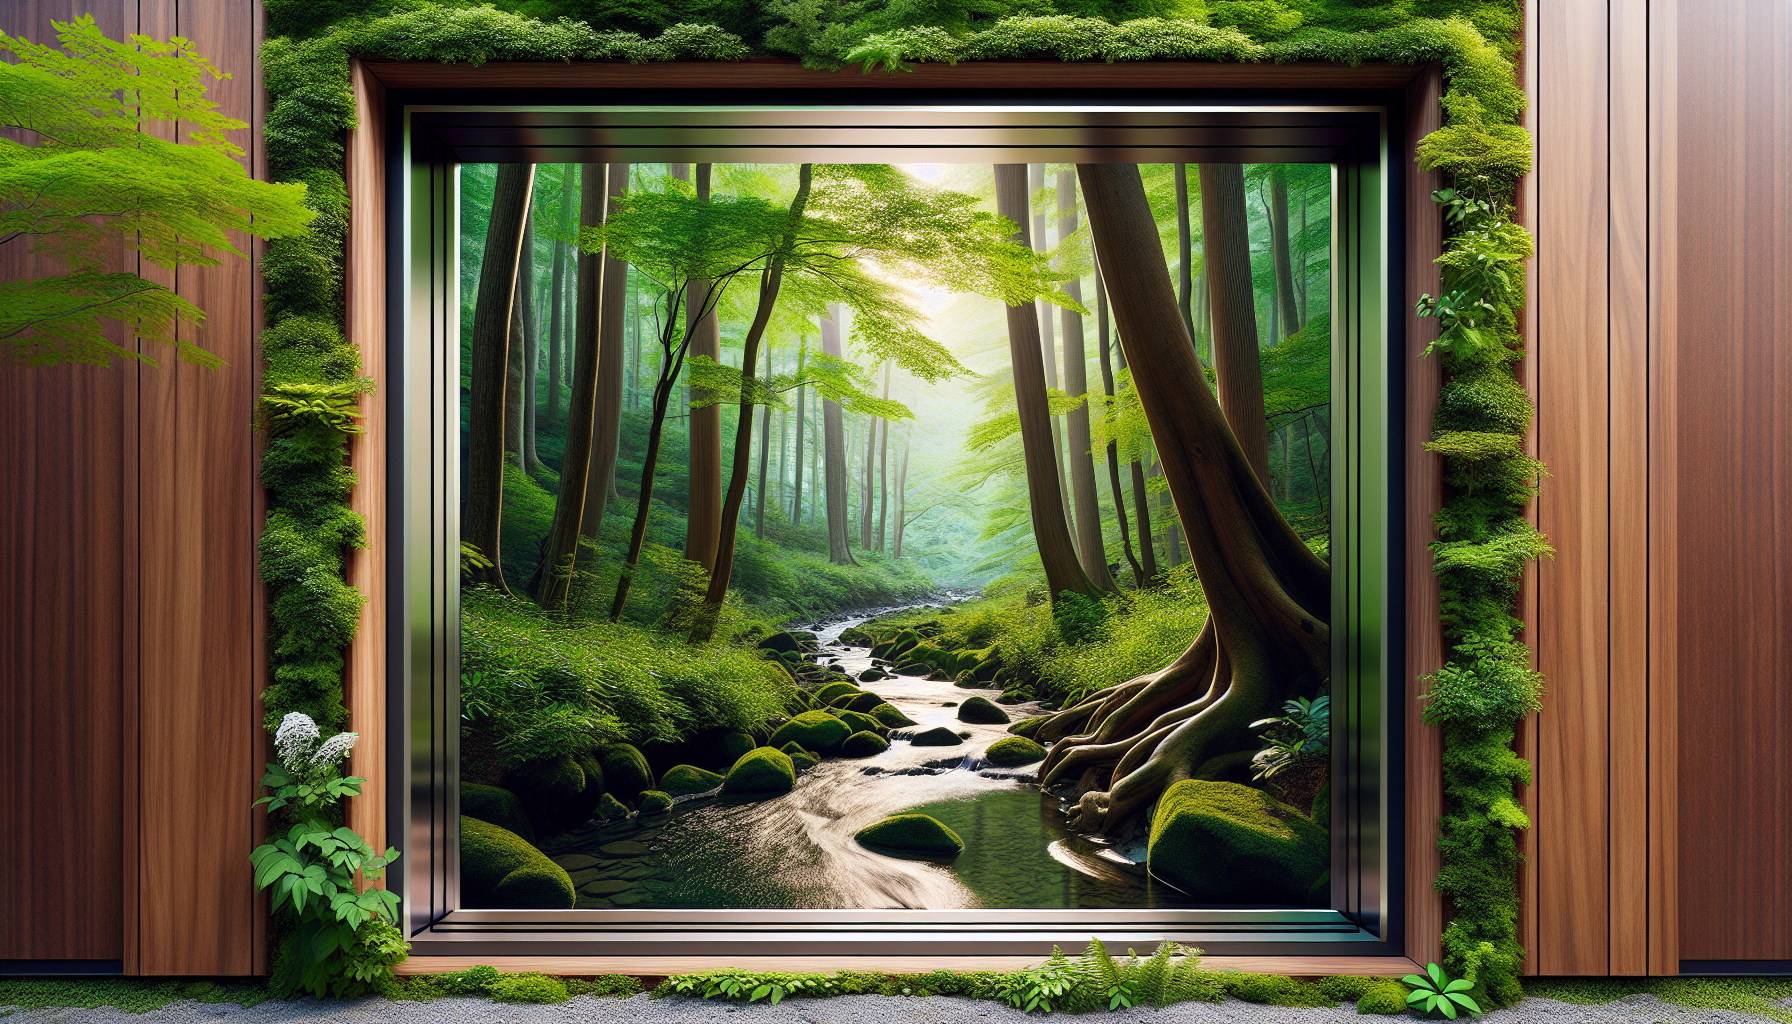 Holz-Alu-Fenster in natürlicher Umgebung